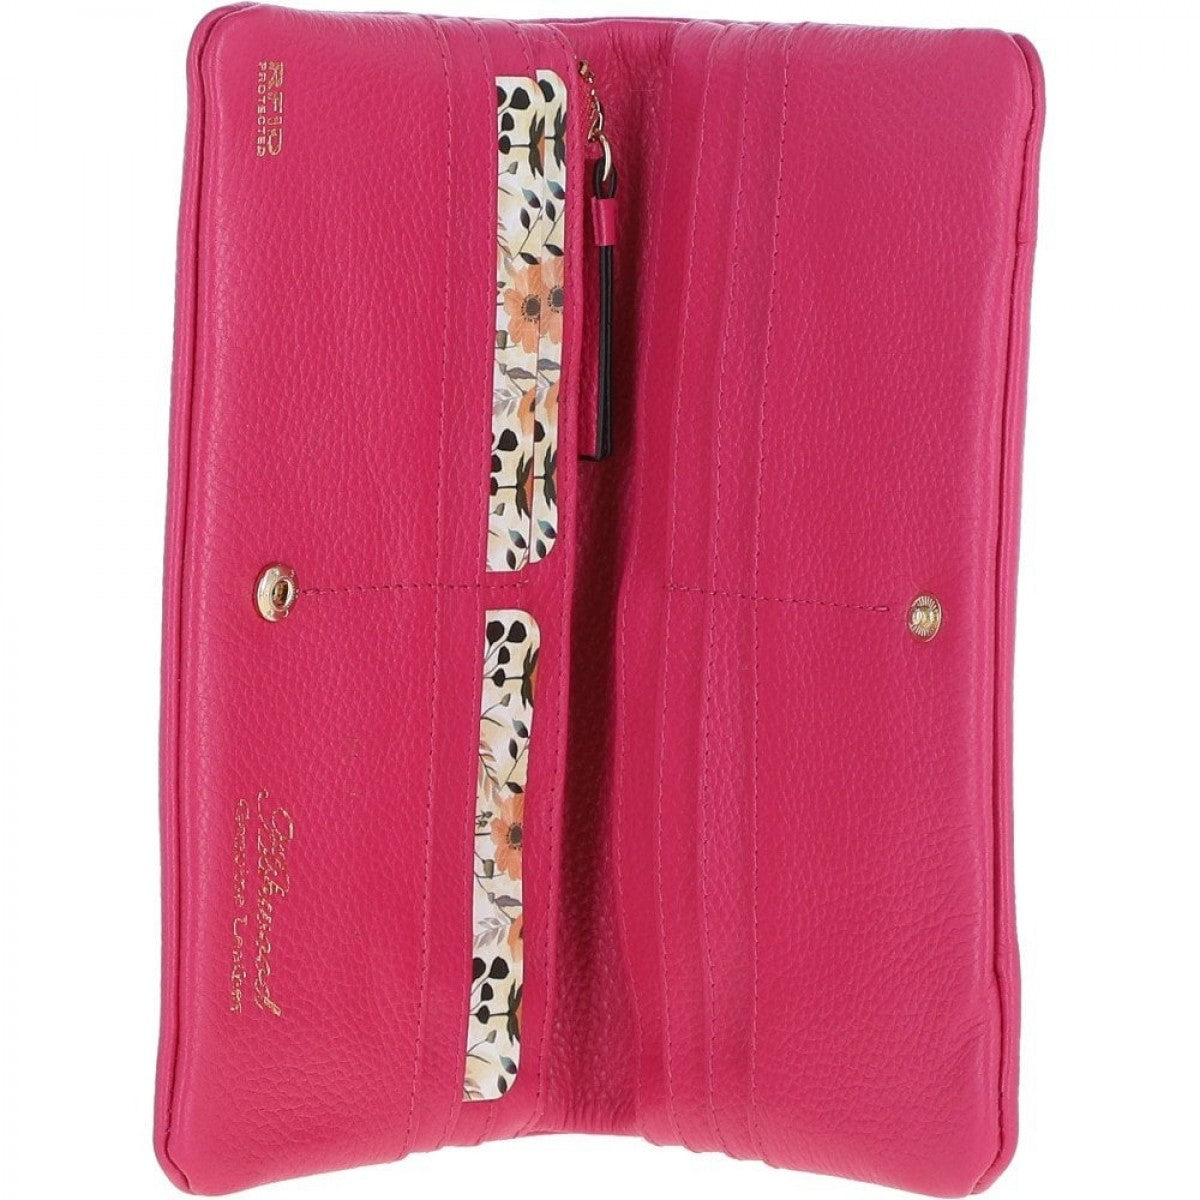 Жіночий гаманець на кнопці ASHWOOD J56 RASPBERRY-SORBET (Ягідний)